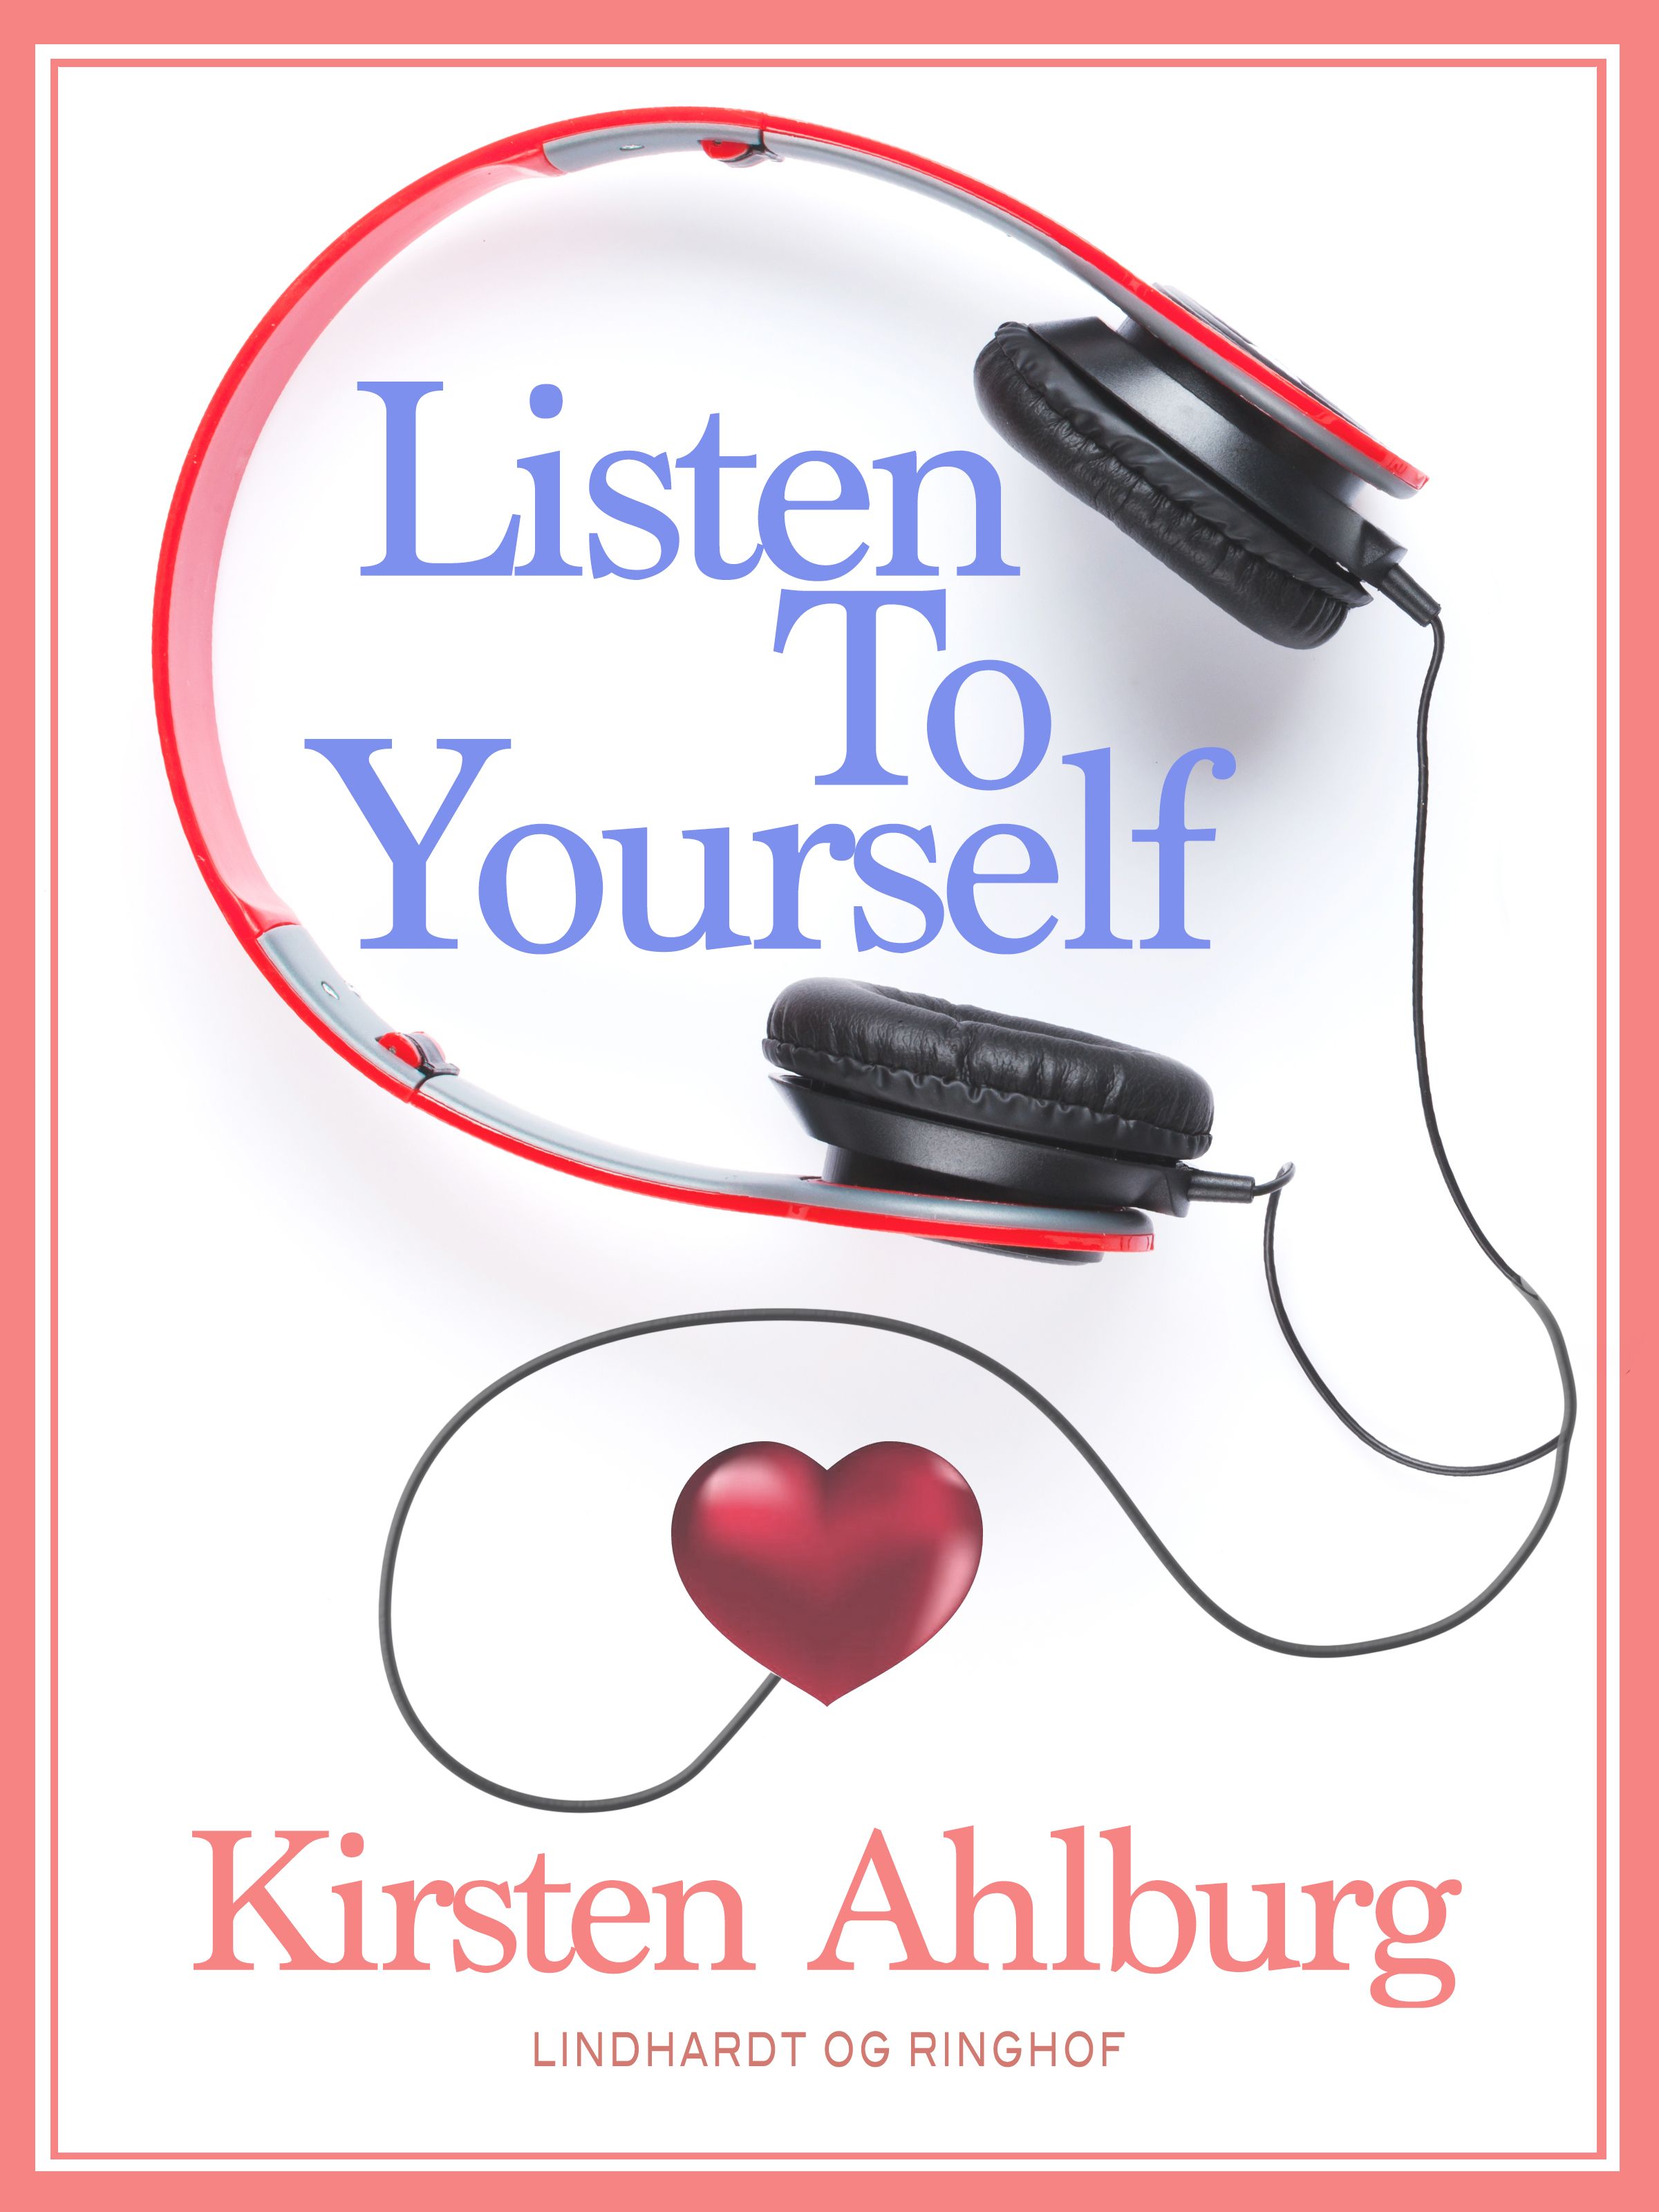 Listen to Yourself, e-bog af Kirsten Ahlburg